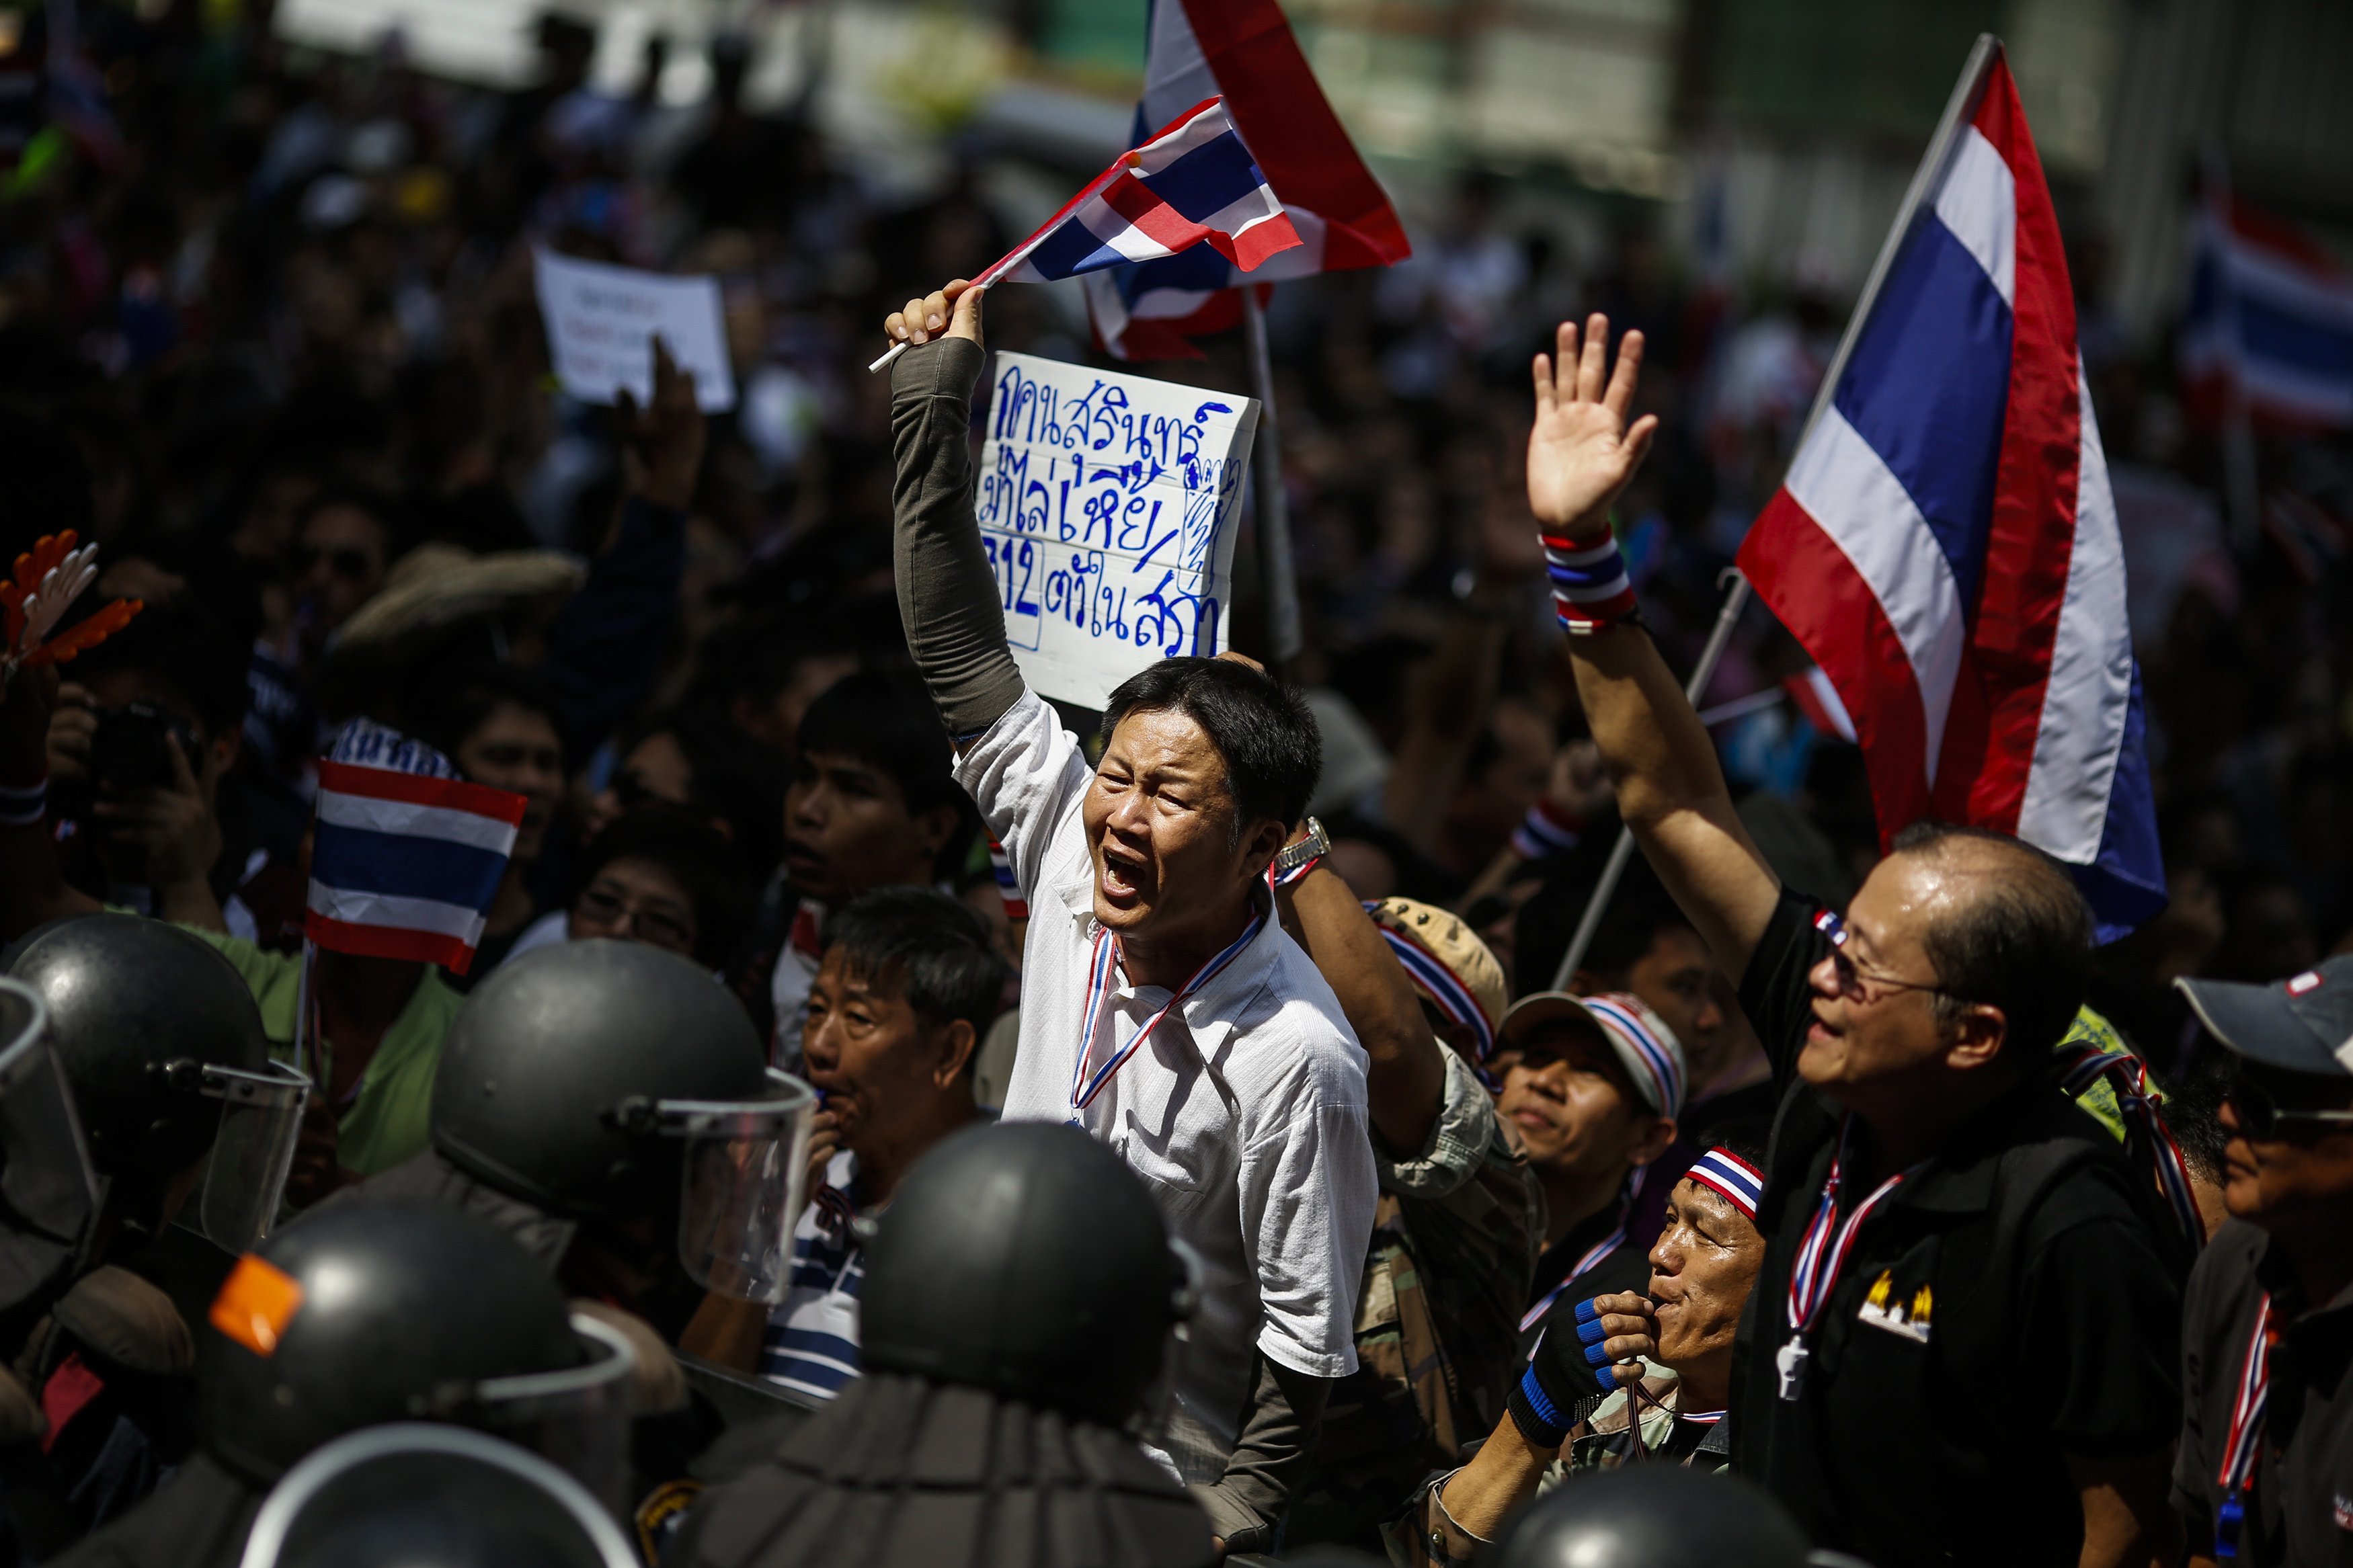 Ταϊλάνδη: Διαδηλωτές εισέβαλαν στο επιτελείο στρατού